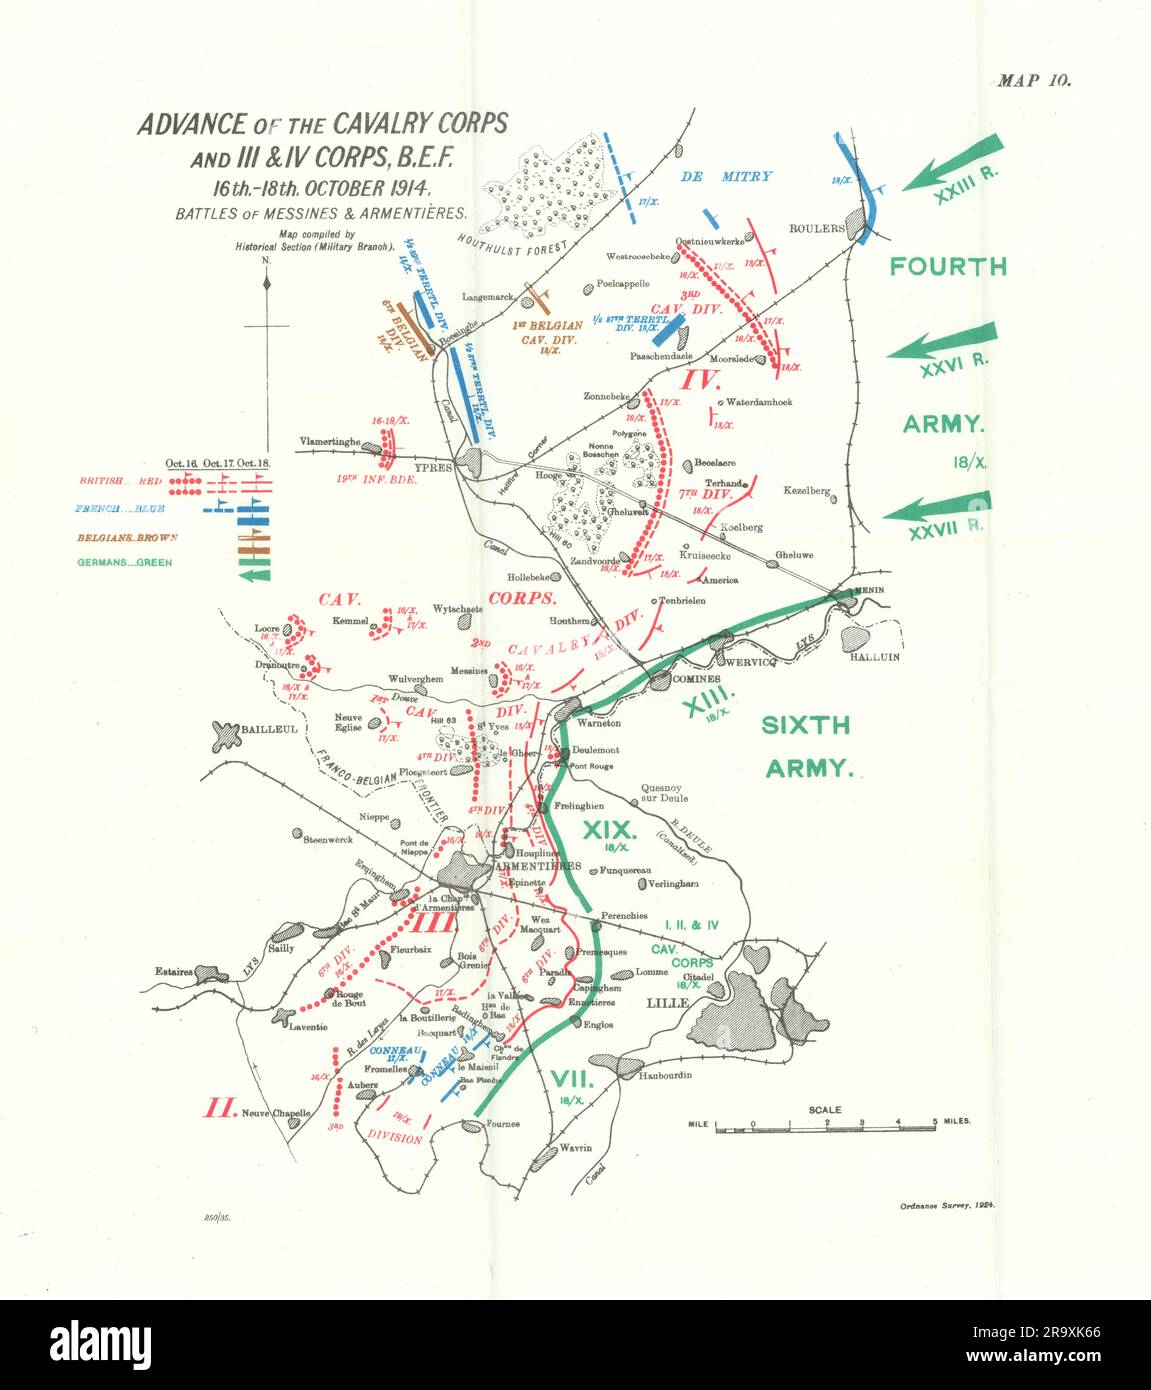 Batallas de Messines y Armentières. Avance 16- 18 de octubre de 1914. WW1. mapa 1933 Foto de stock